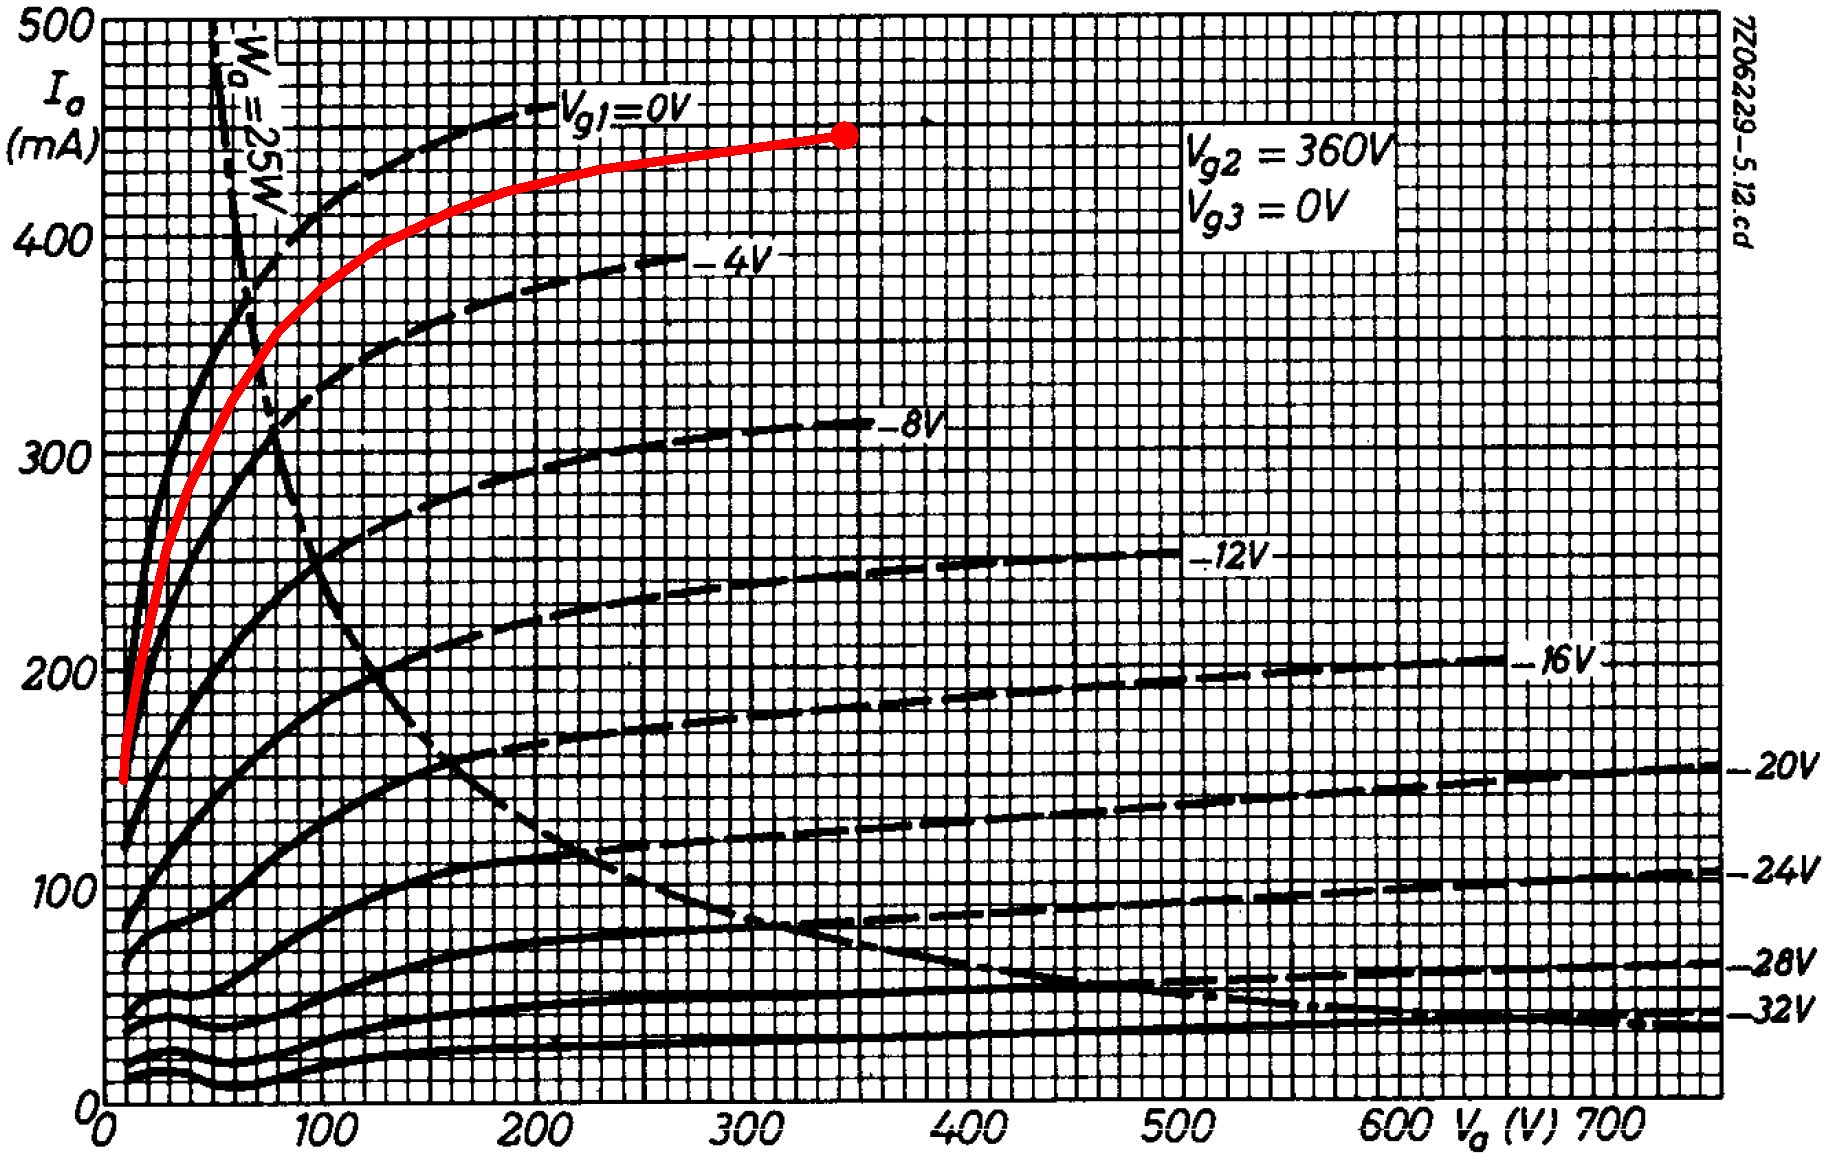 EL34 plate characterisitics with Hot Cat 0V curve